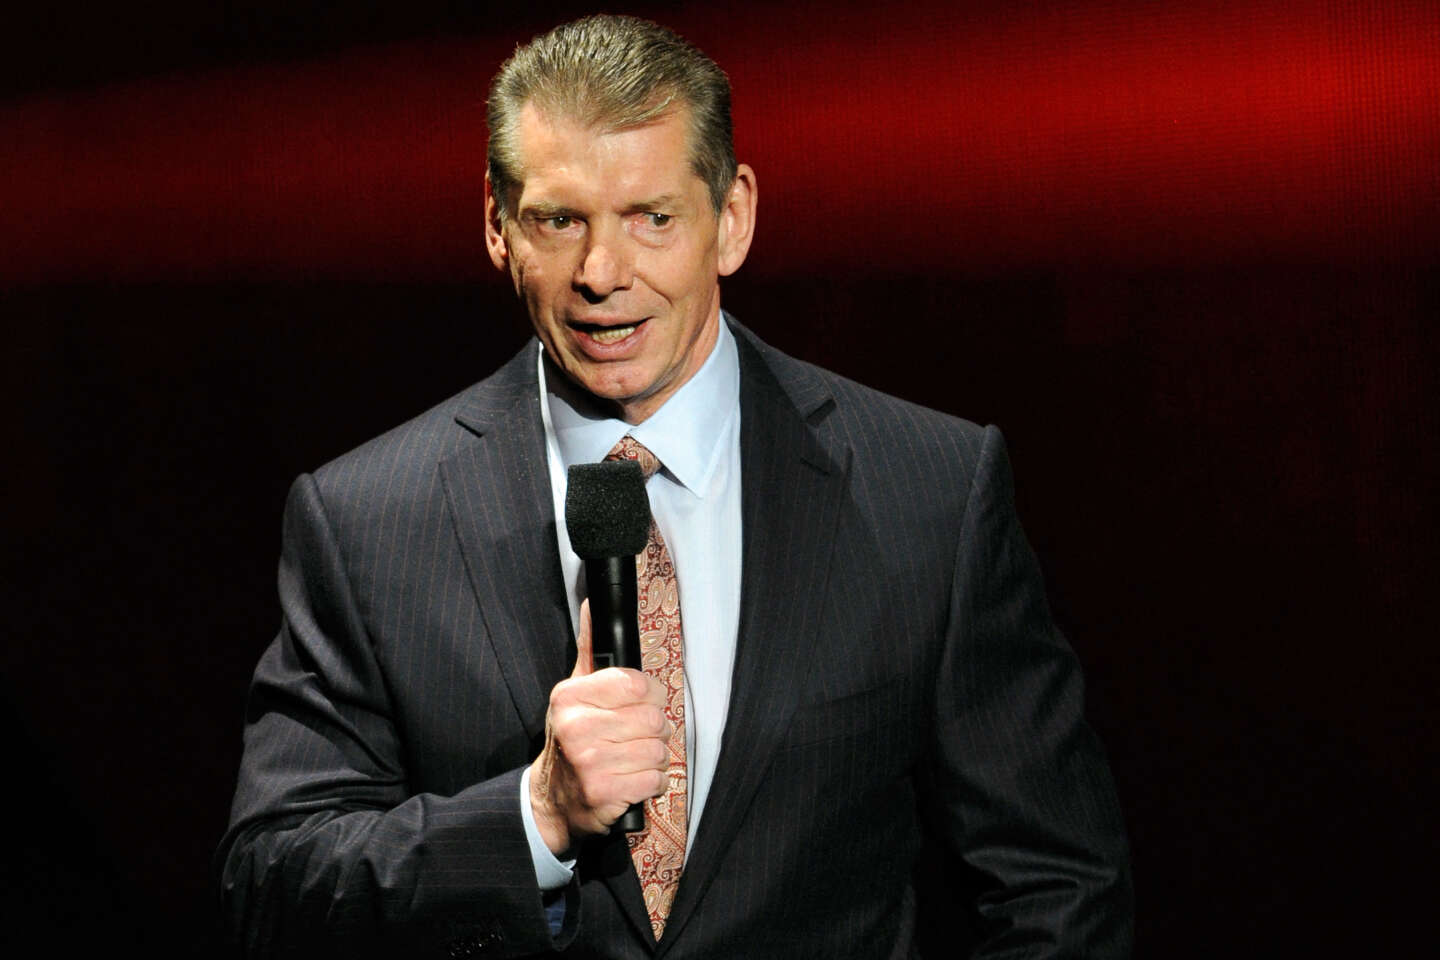 Aux Etats-Unis, démission du patron de catch et de MMA, Vince McMahon, visé par une accusation d’agressions sexuelles